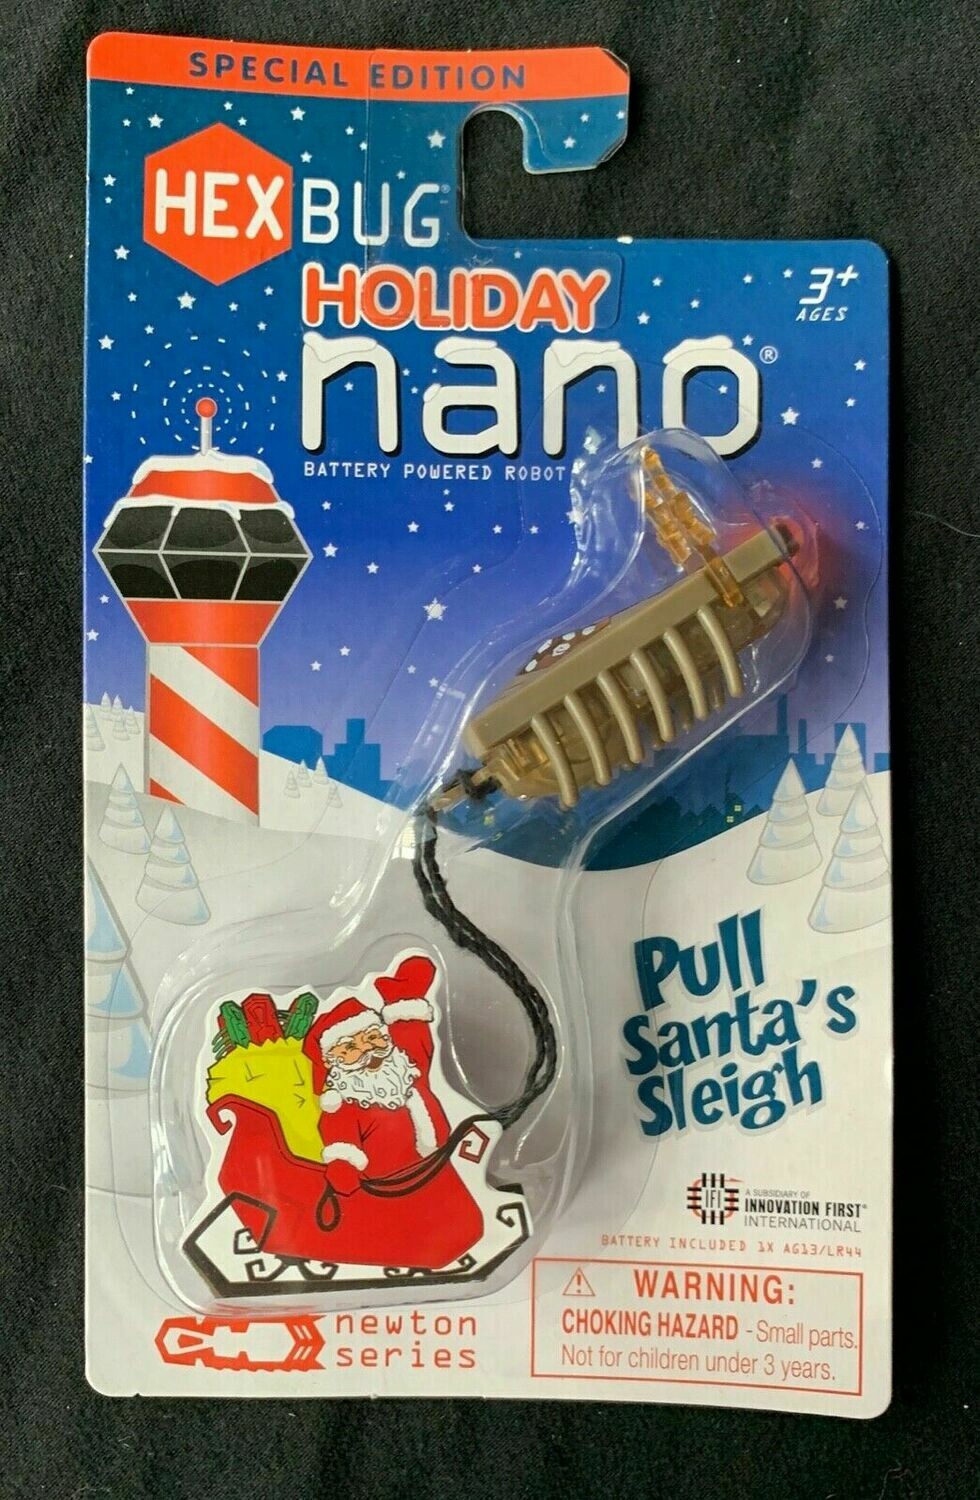 Hexbug Holiday Nano